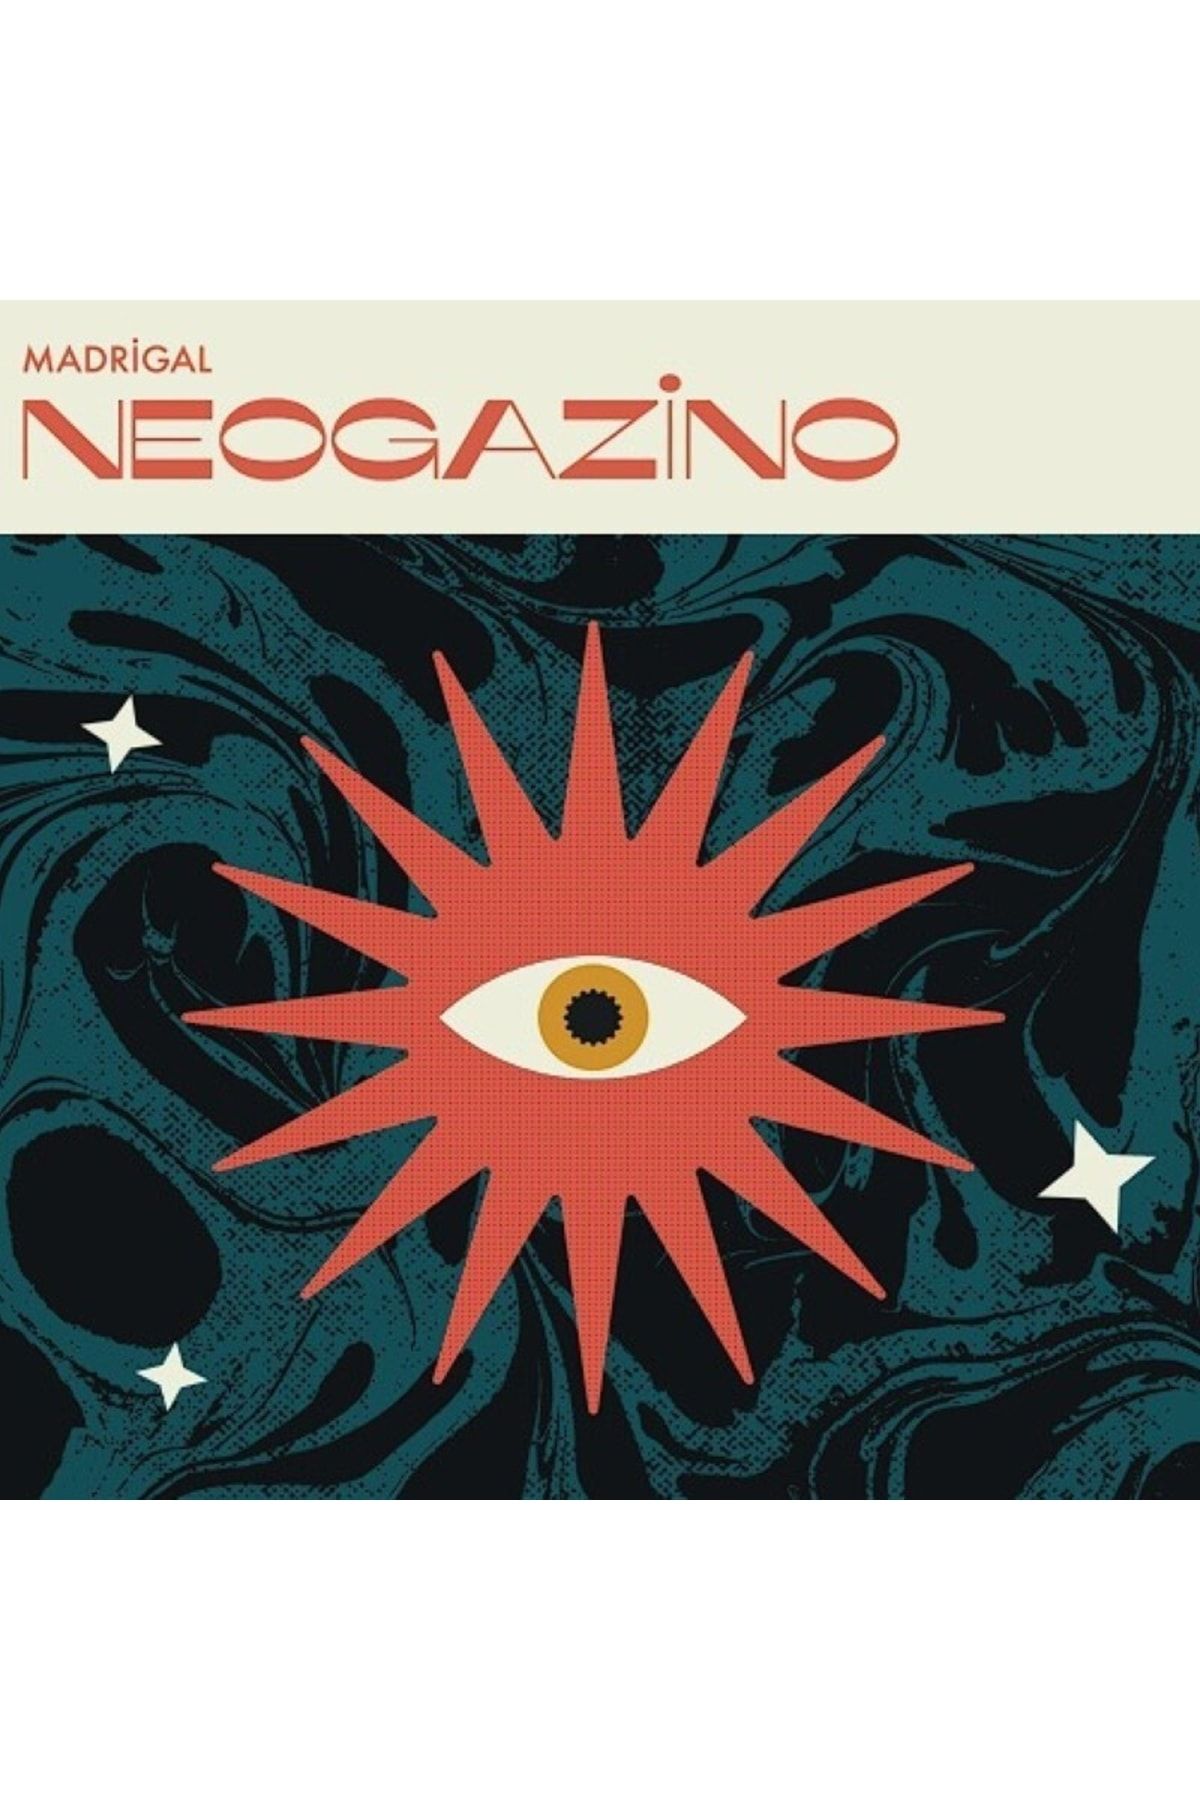 Vinylium Zone Madrigal - Neogazino Vinyl, Album, Lp Plak